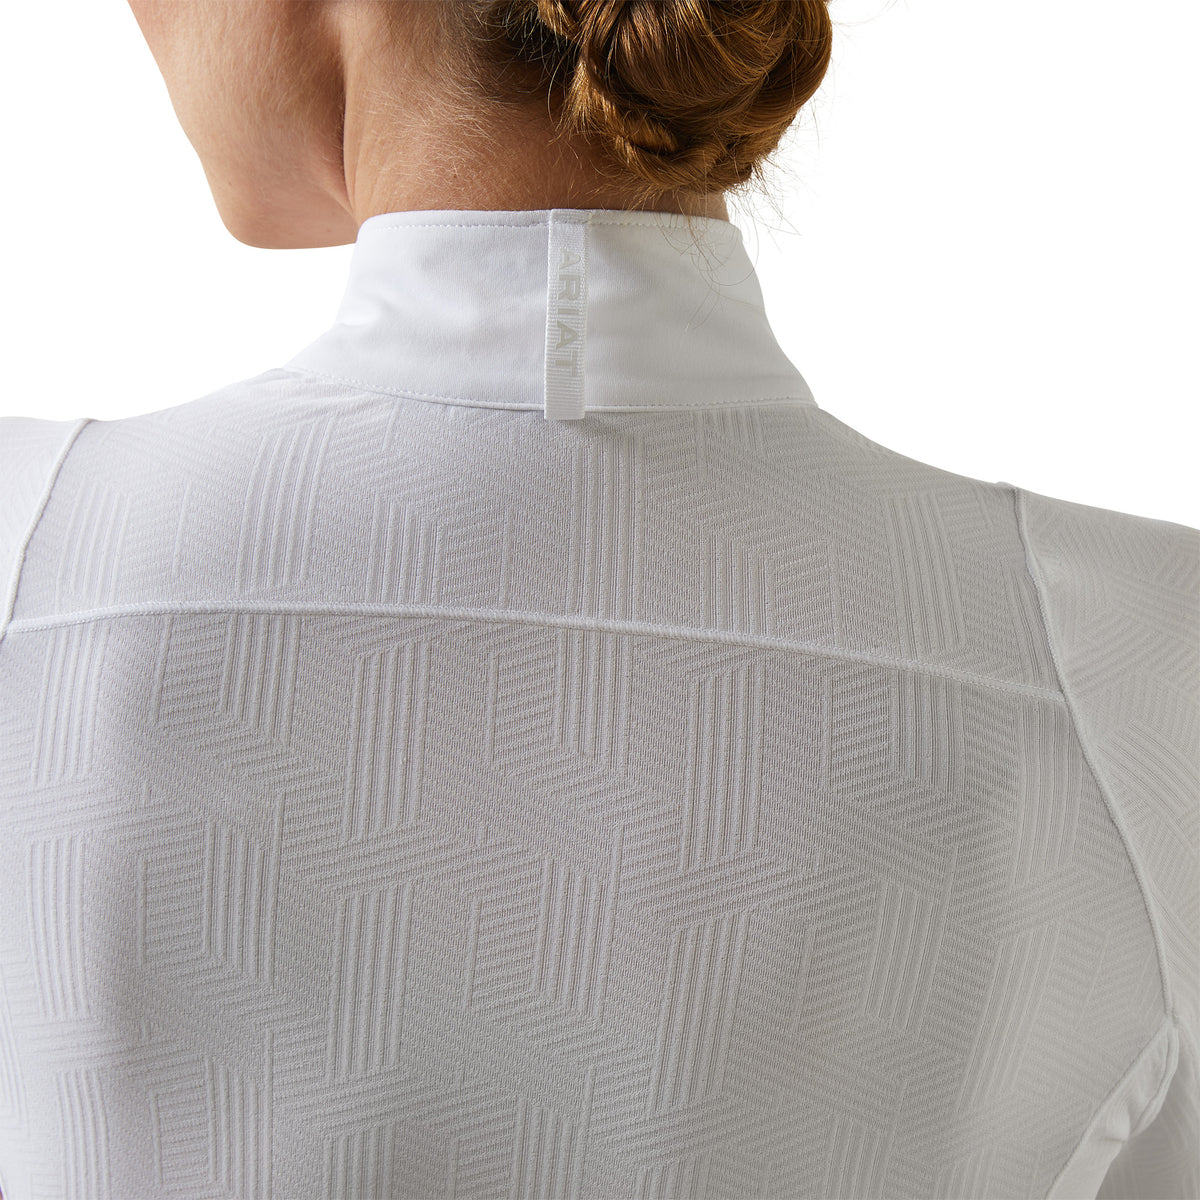 Ariat Women's Luxe Long Sleeve Show Shirt